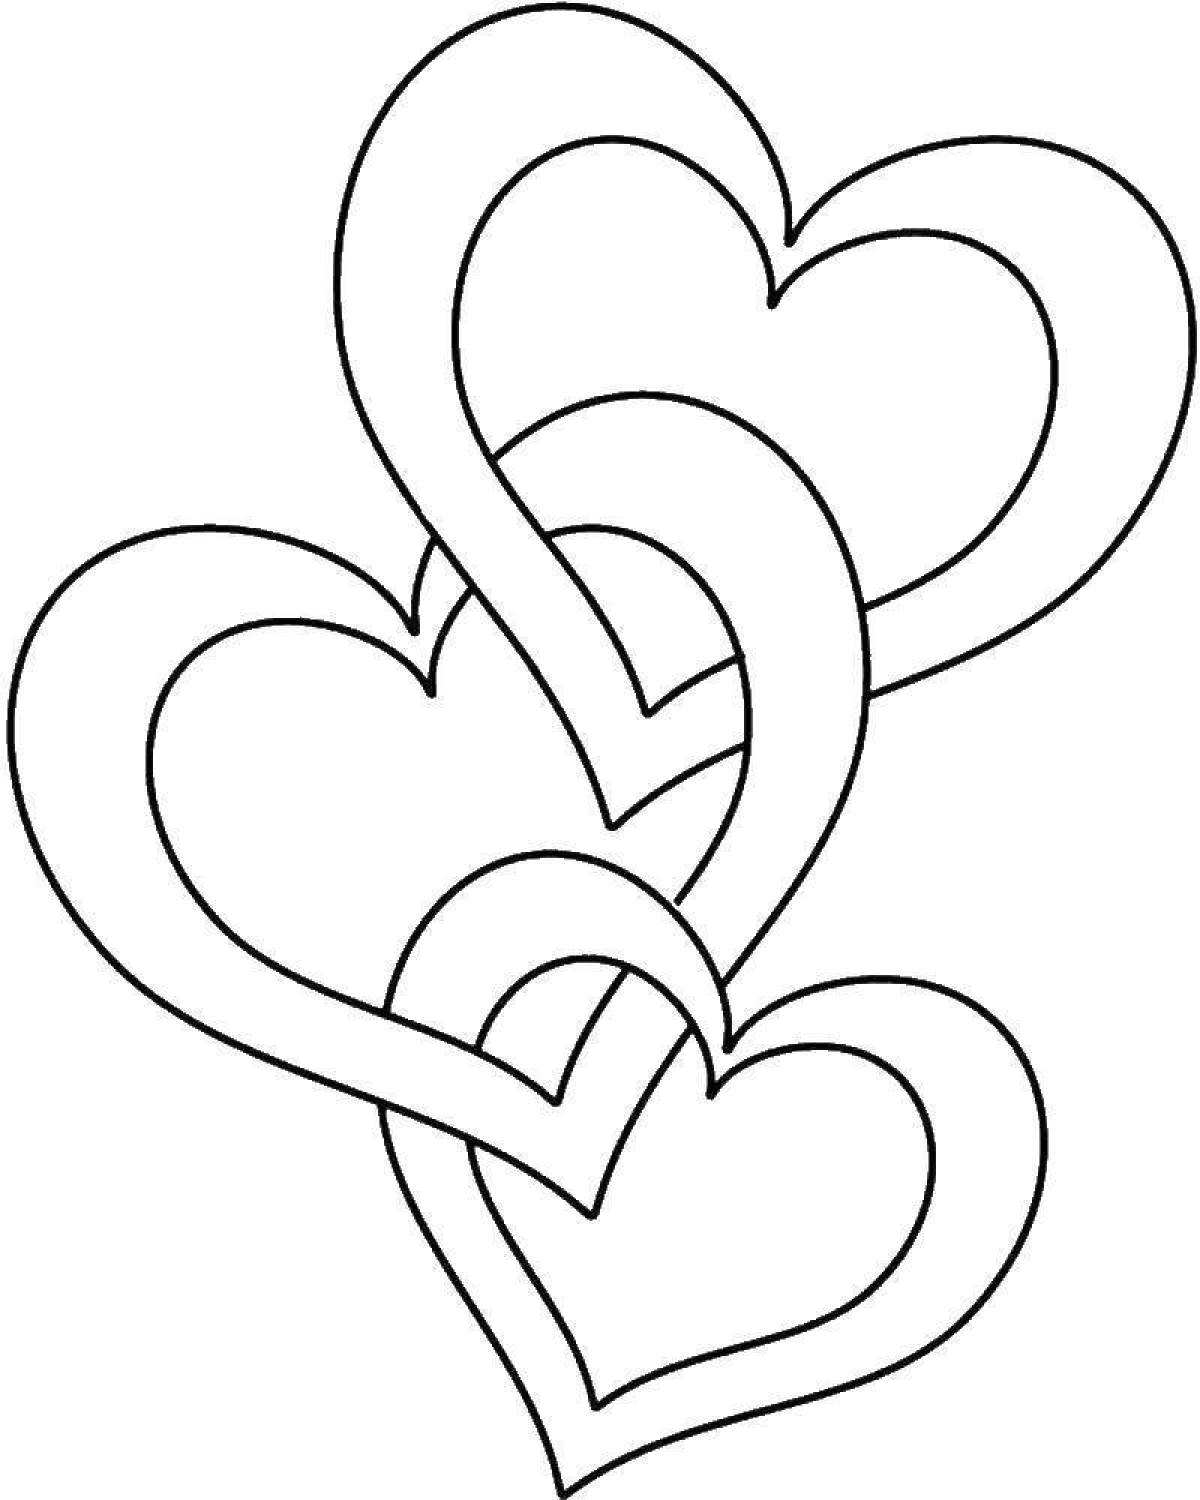 Легкие рисунки раскраски. Сердце раскраска. Сердечко раскраска для детей. Рисунки для срисовки сердечки. Красивое сердечко рисунок.